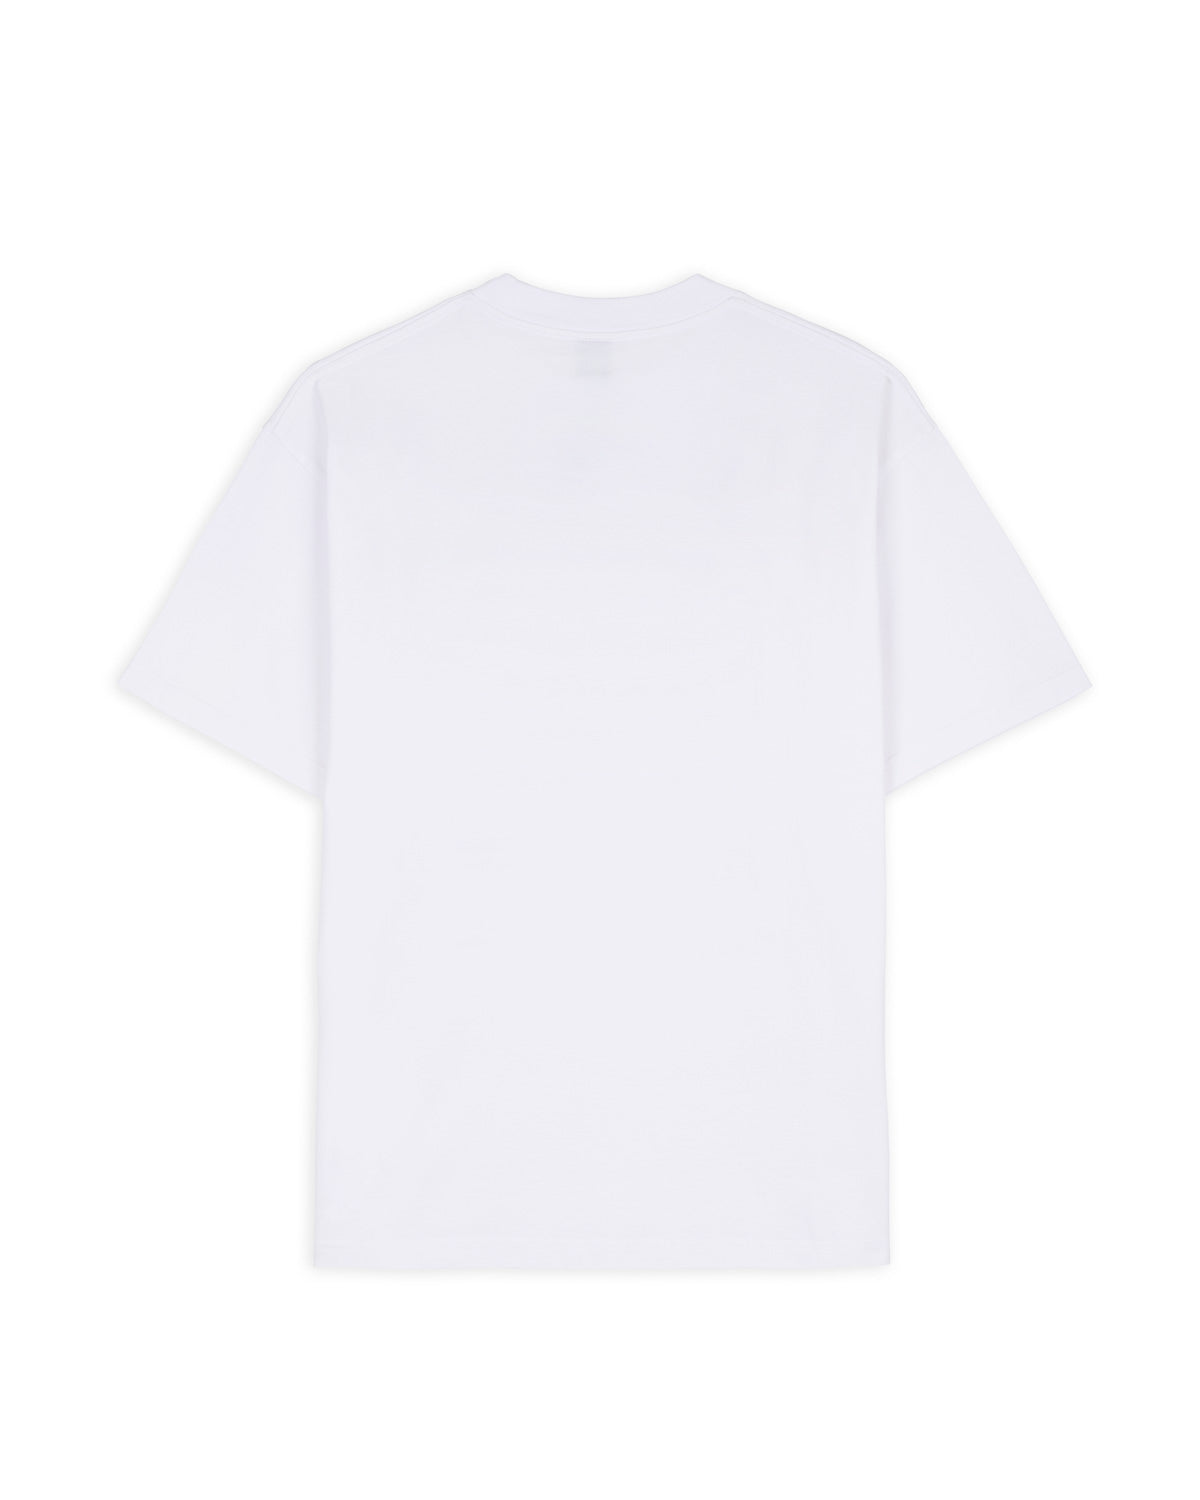 Progressive Artistry T-shirt - White 2